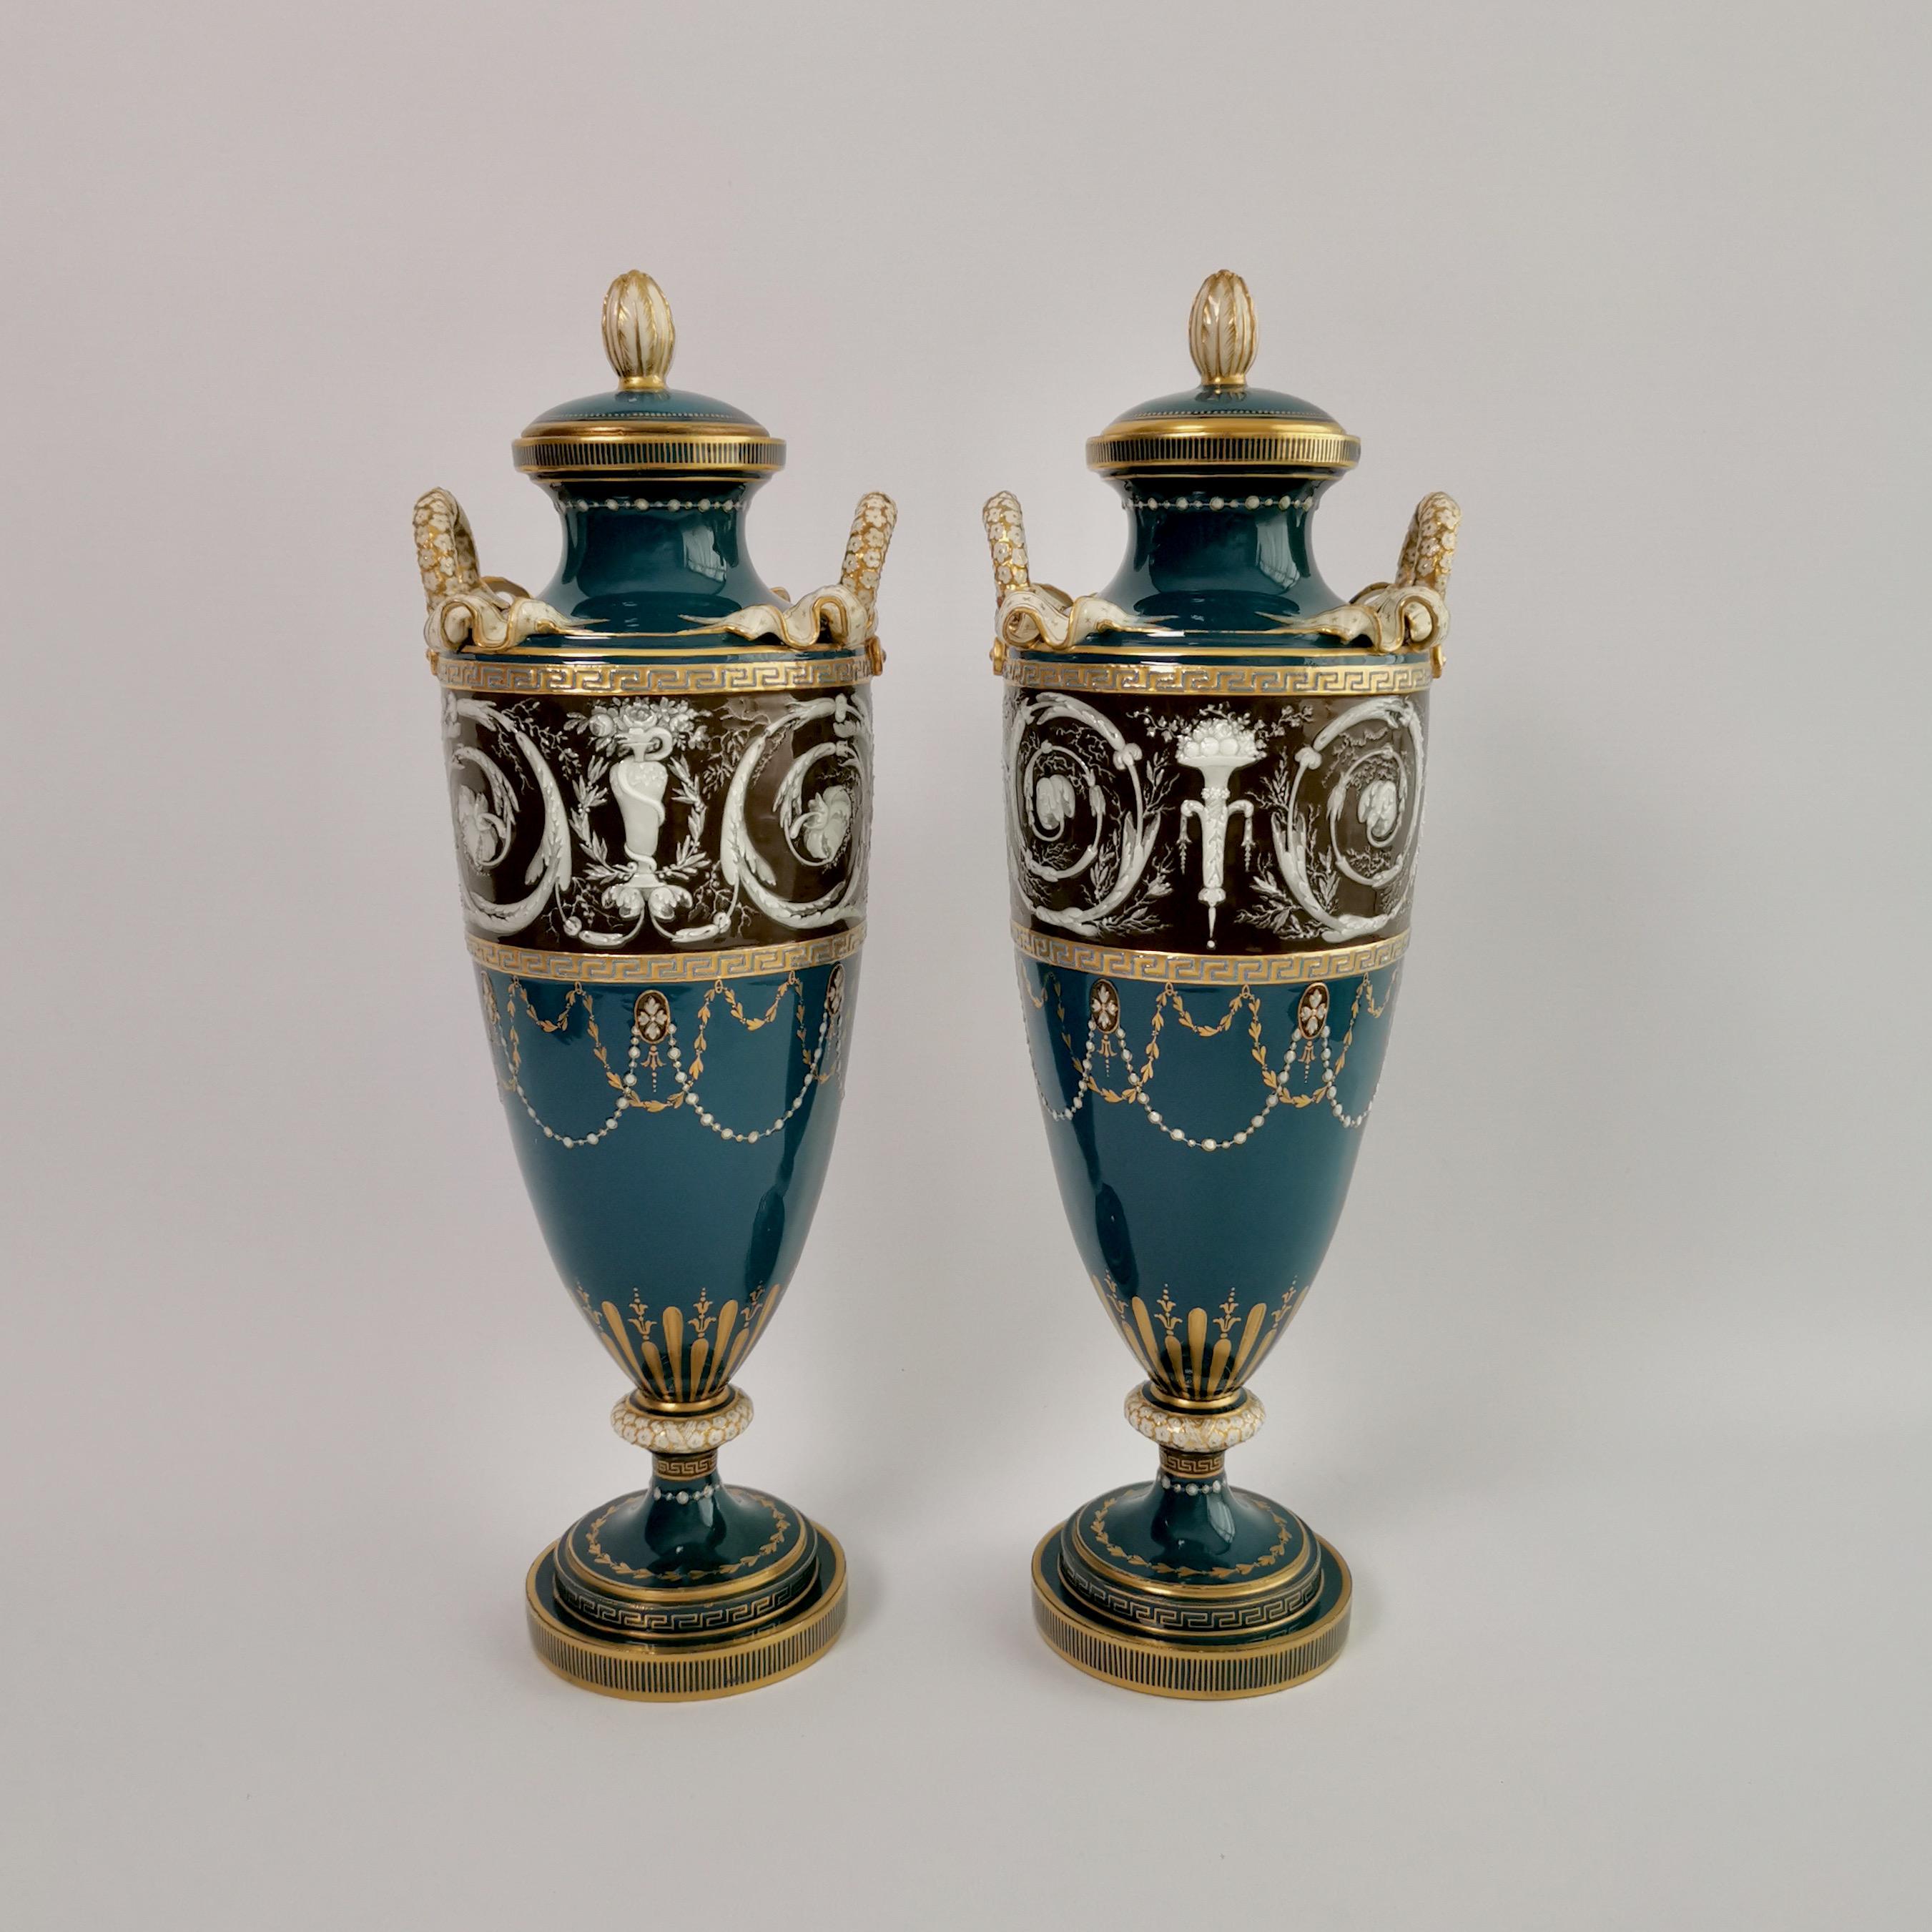 English Minton Pair of Porcelain Vases - Urns, Pâte-sur-Pâte by Harry Hollins, 1873-1891